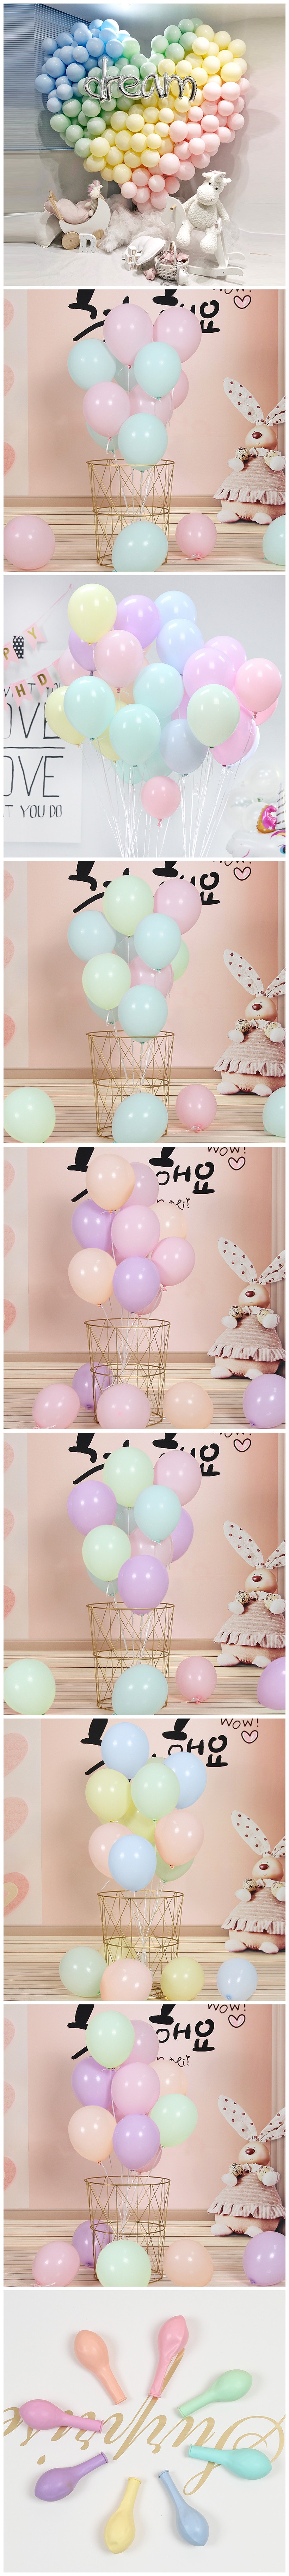 【中国直邮】英尼 马卡龙气球婚庆用品 结婚生日派对浪漫装饰场景布置糖果色气球 100PCS